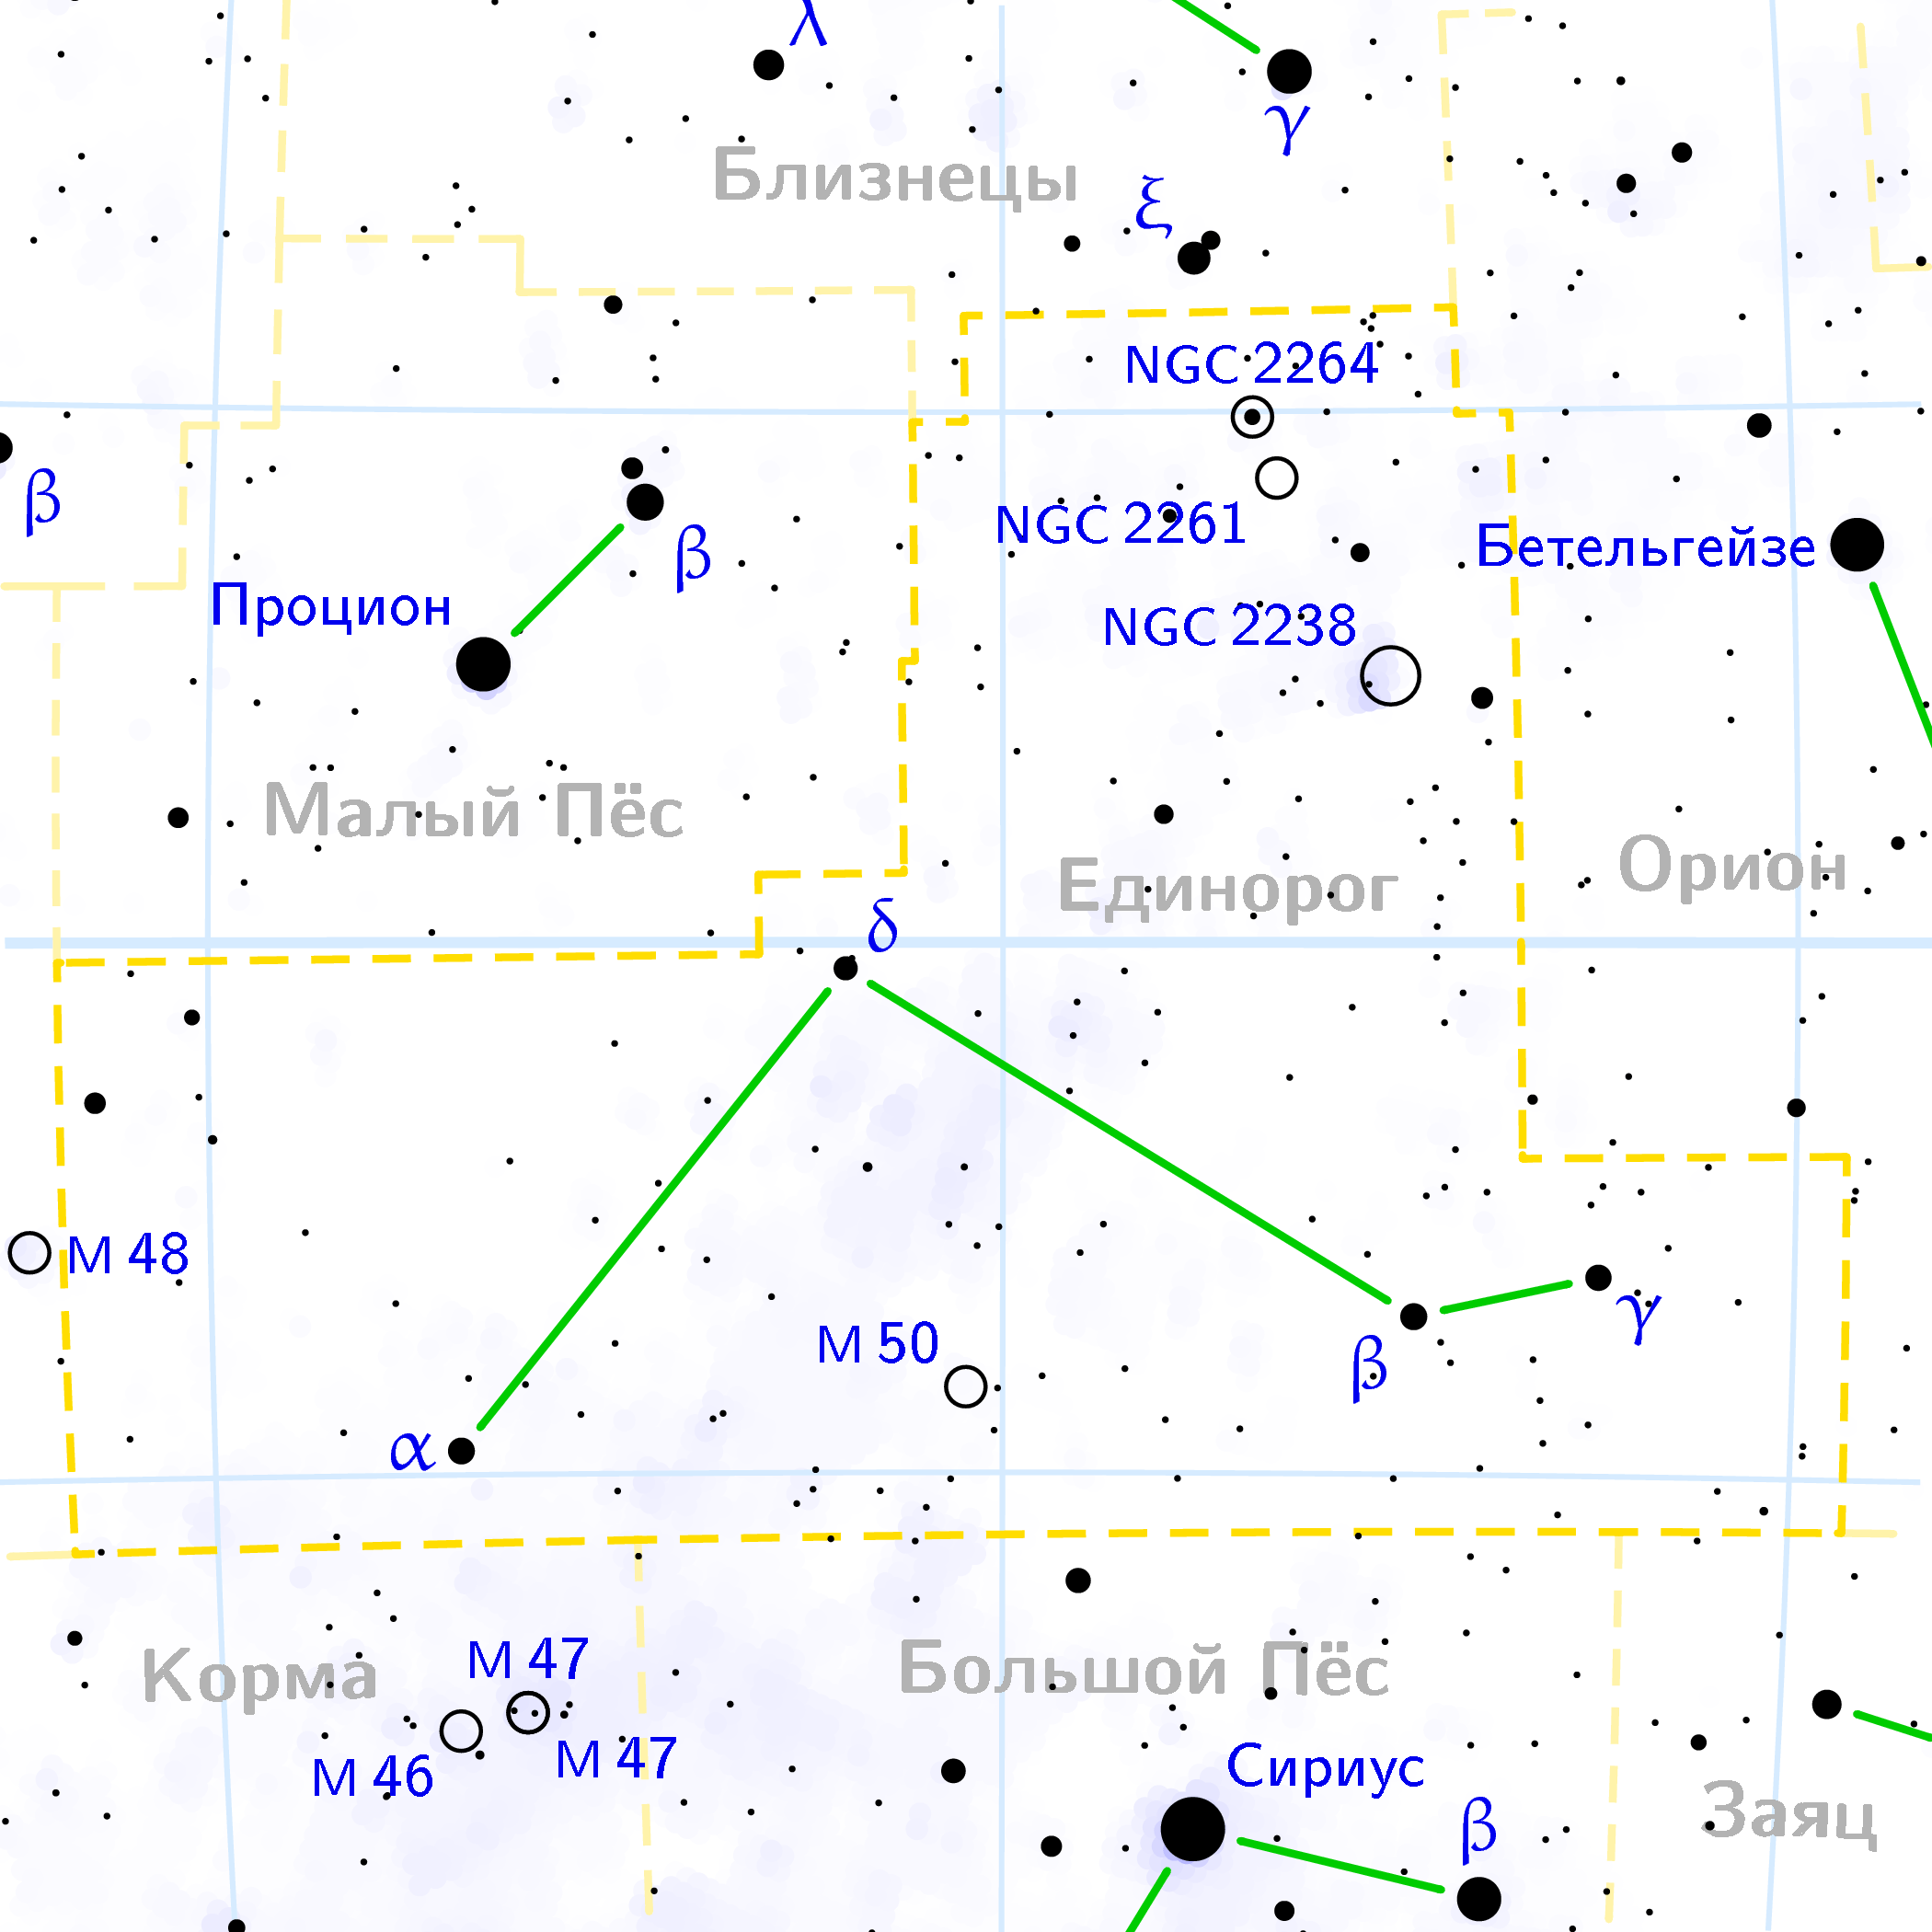 Созвездие единорога на карте звездного неба